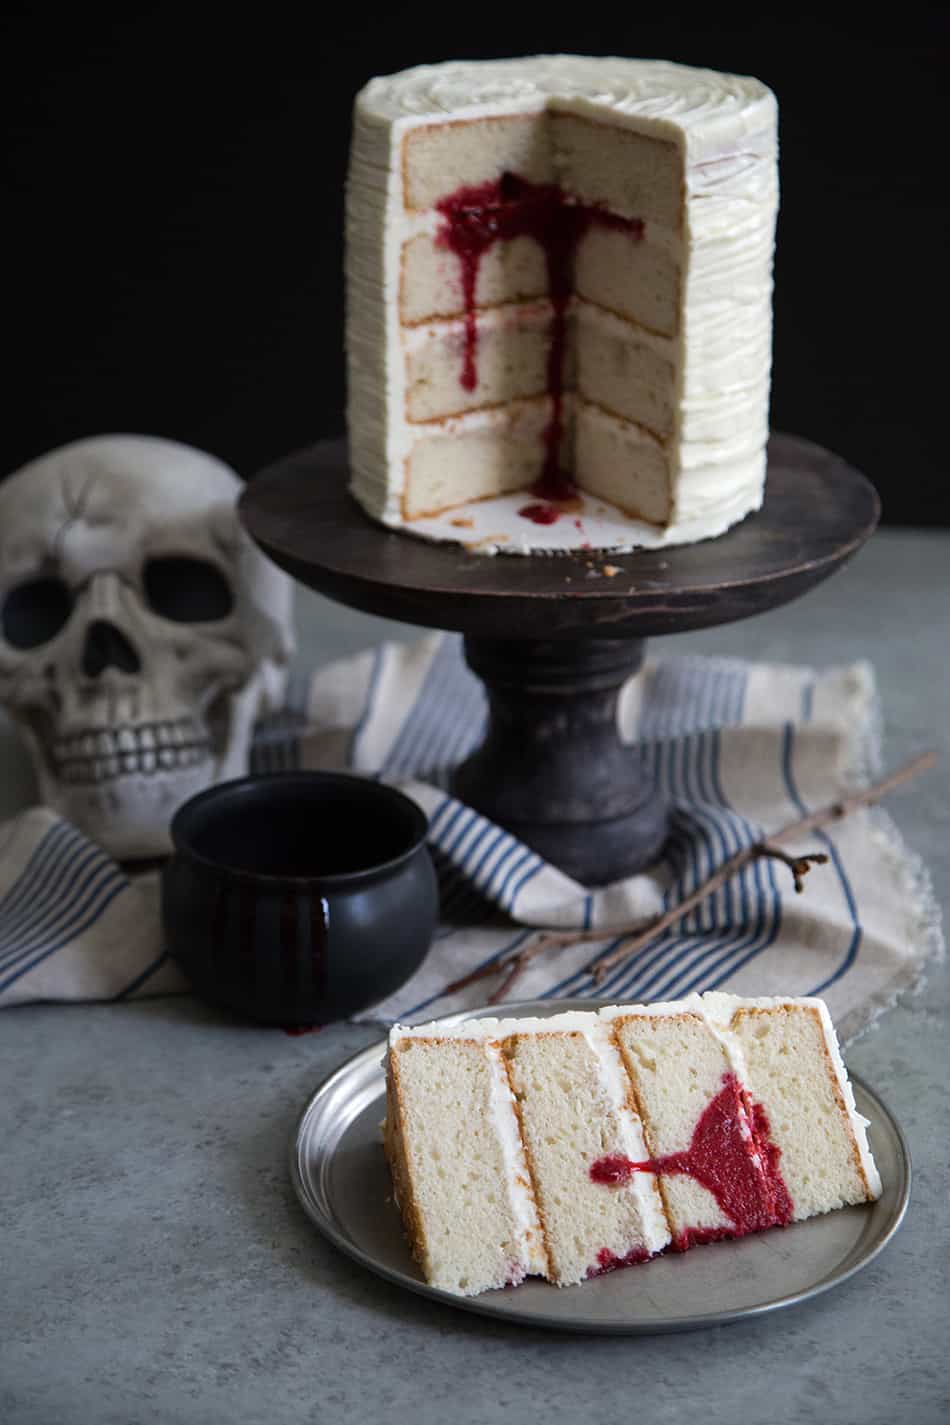 Surprise Bloody Cake